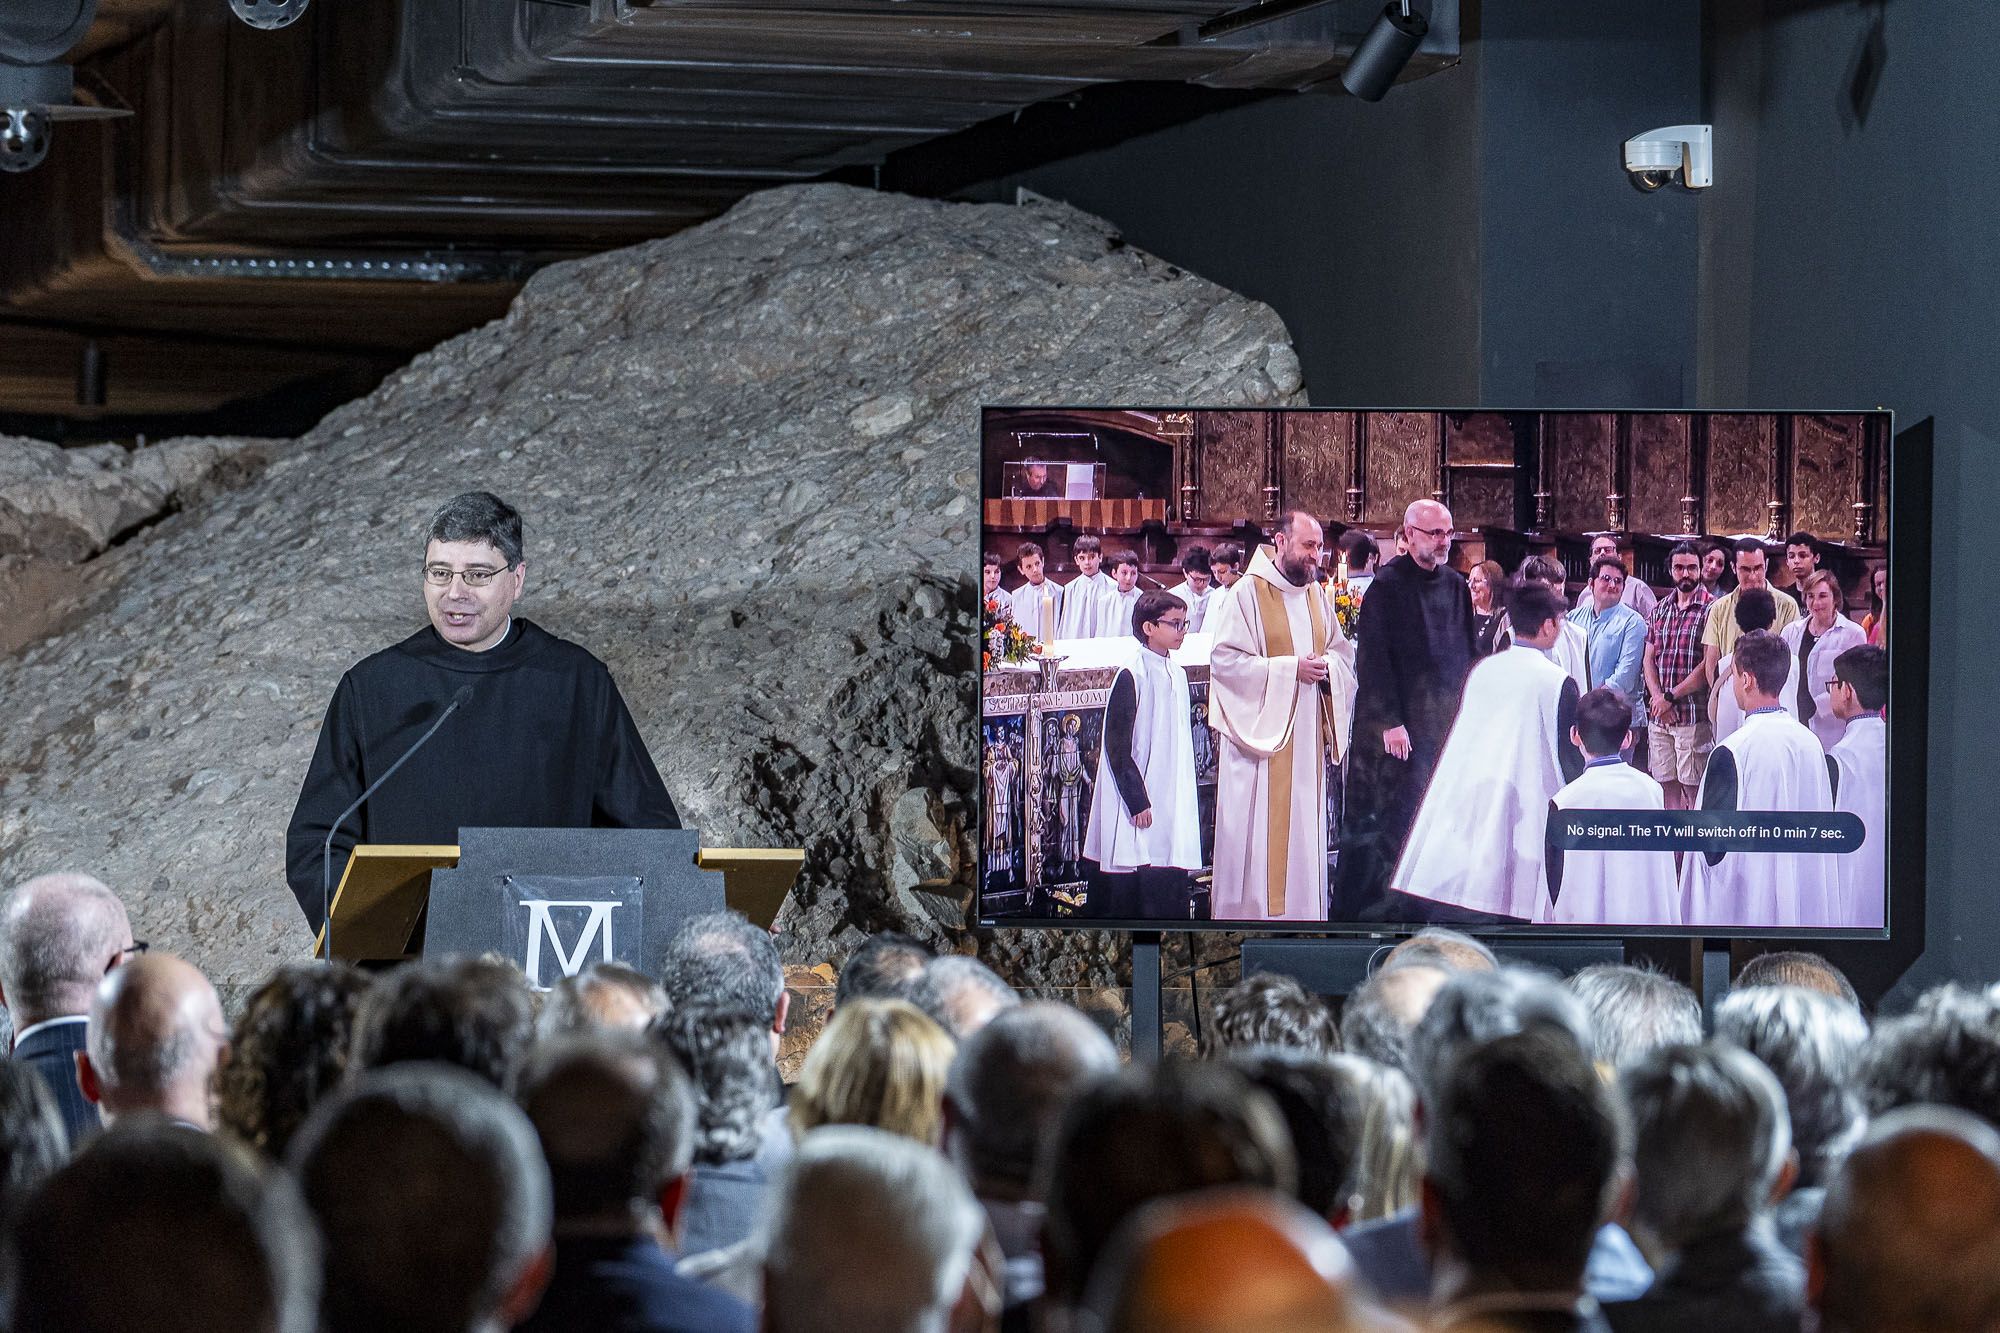 La presentació del mil·lenari de Montserrat, en imatges